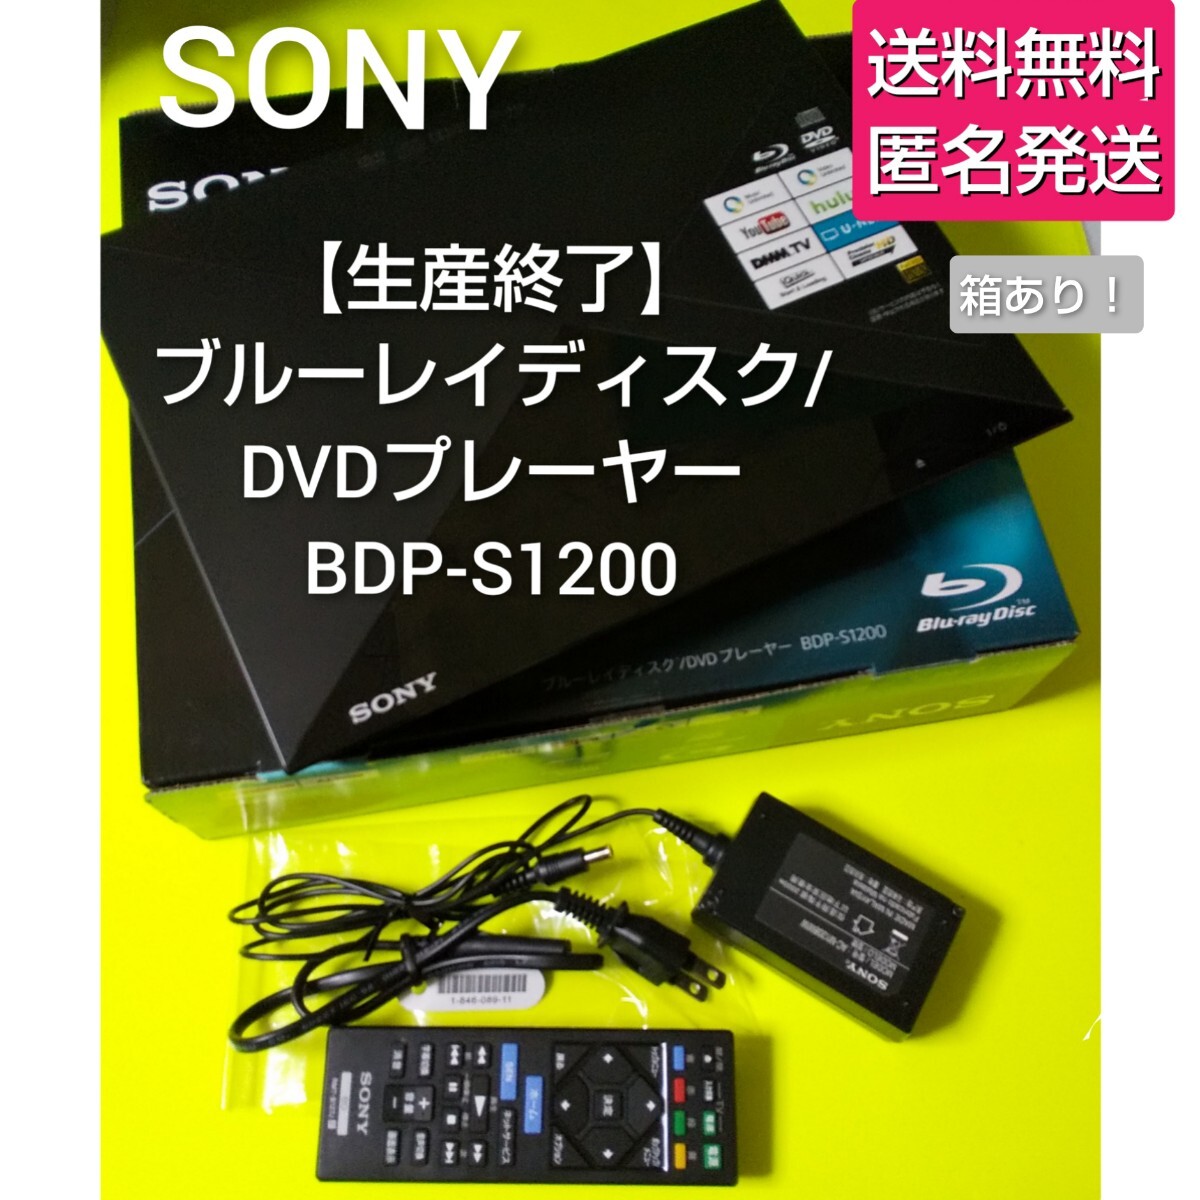 【生産終了】SONY★ブルーレイディスク/DVDプレーヤー BDP-S1200★中古品